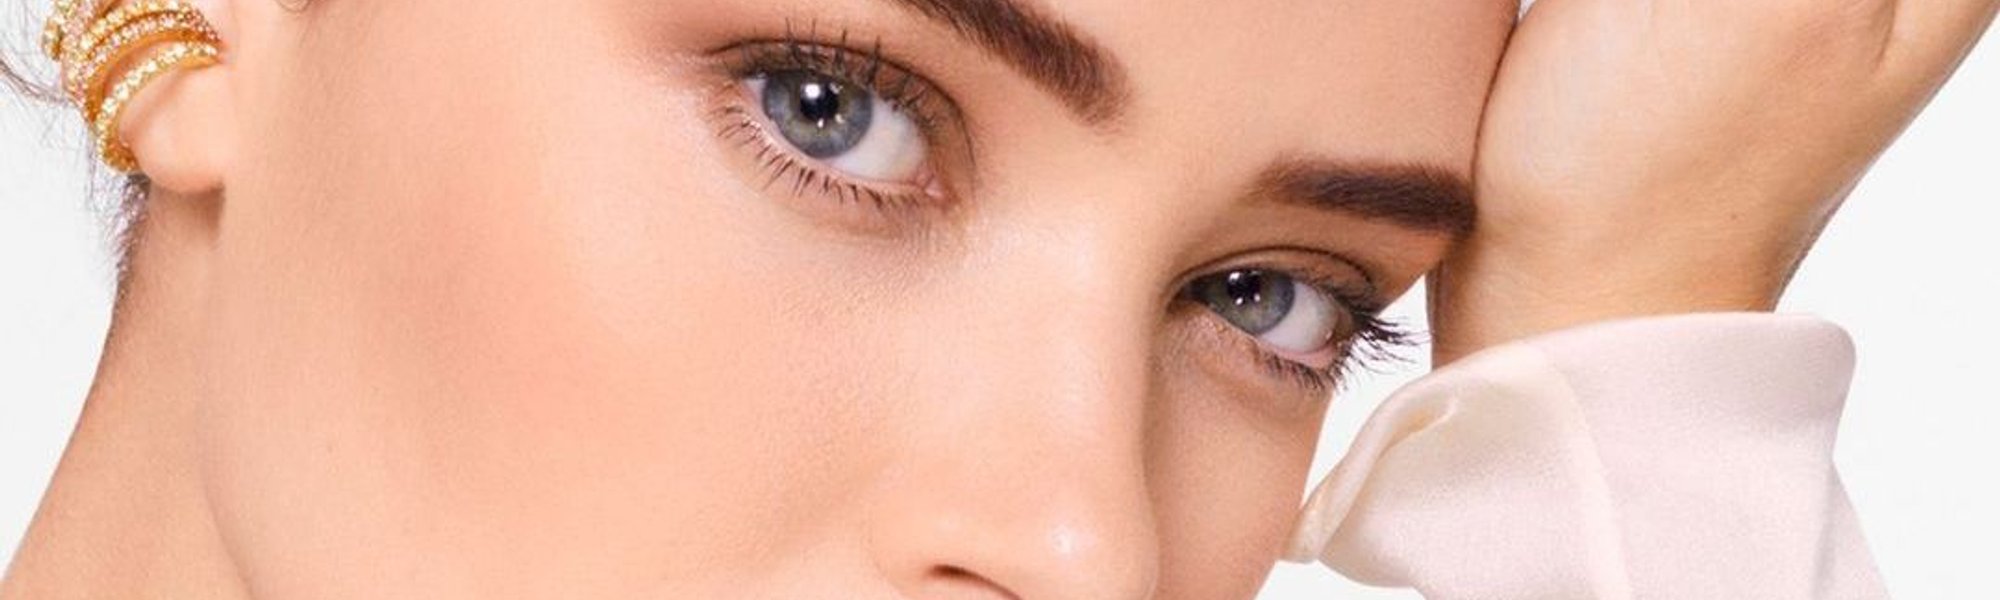 Beneficios de la vitamina c para la piel mixta | L'Oréal Paris